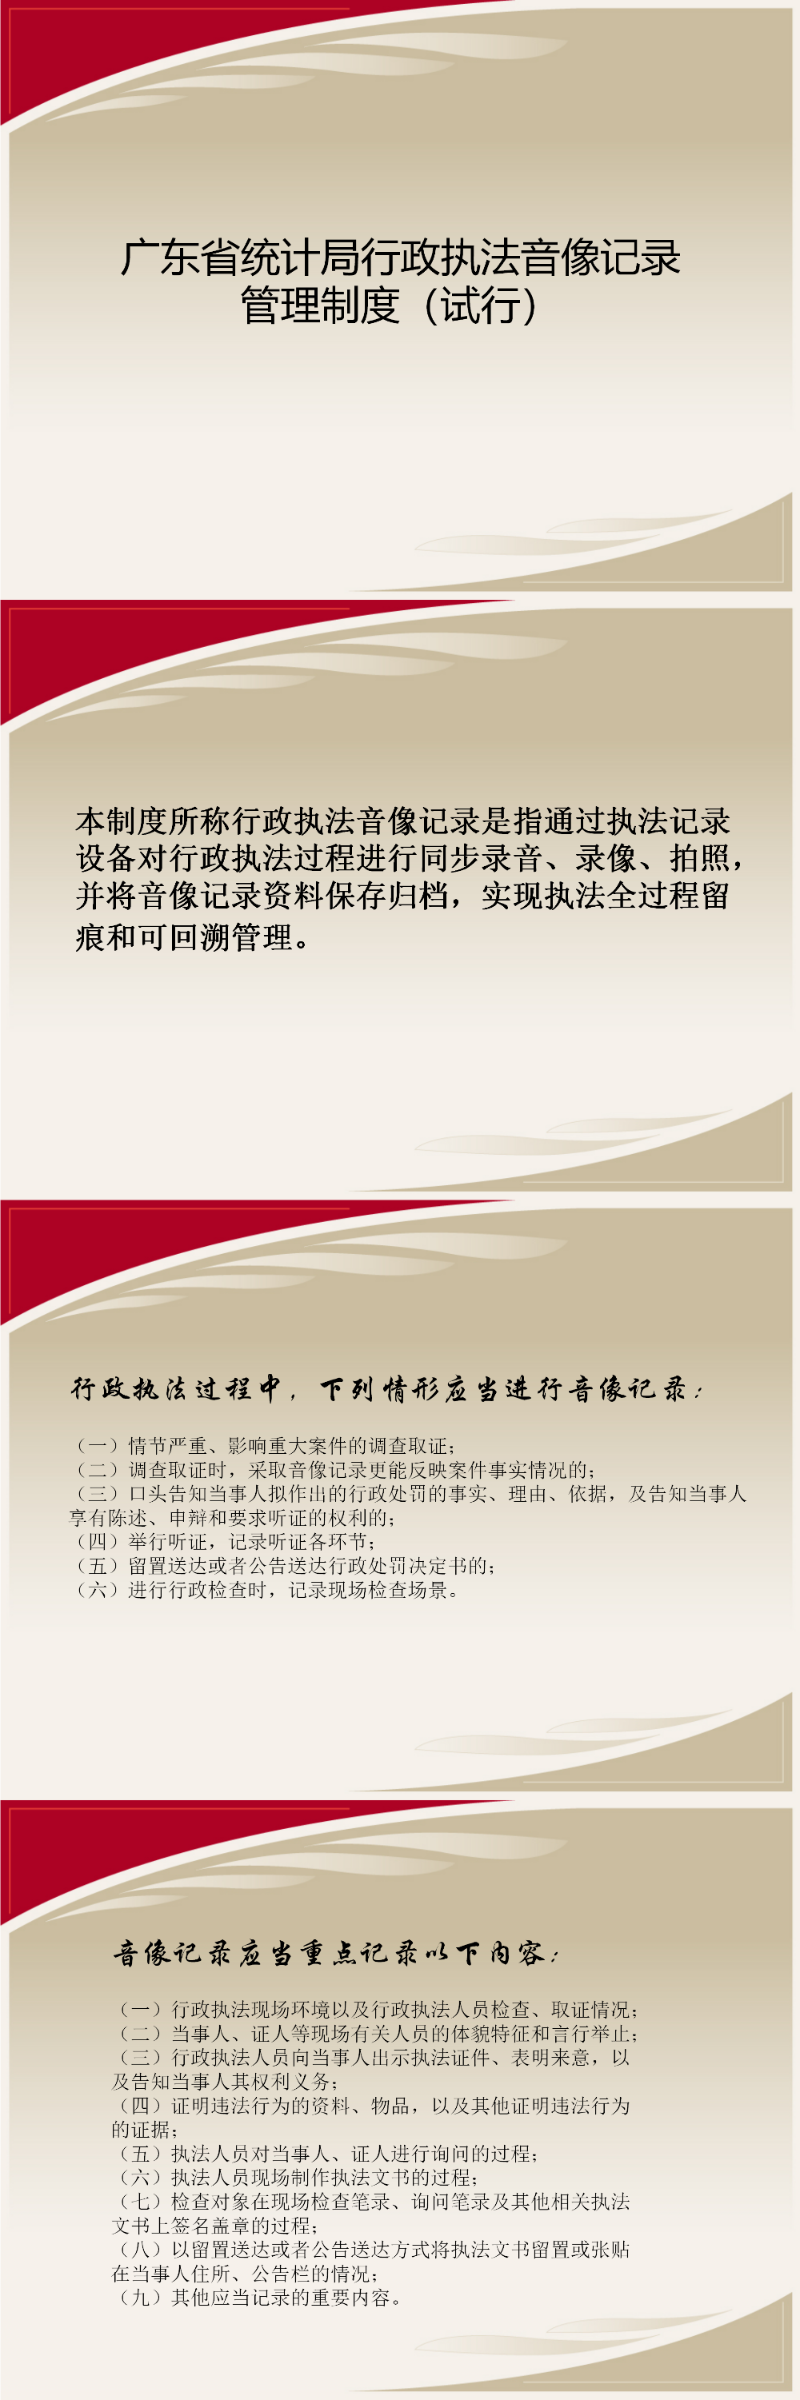 广东省统计局行政执法音像记录管理制度（试行）_01.png